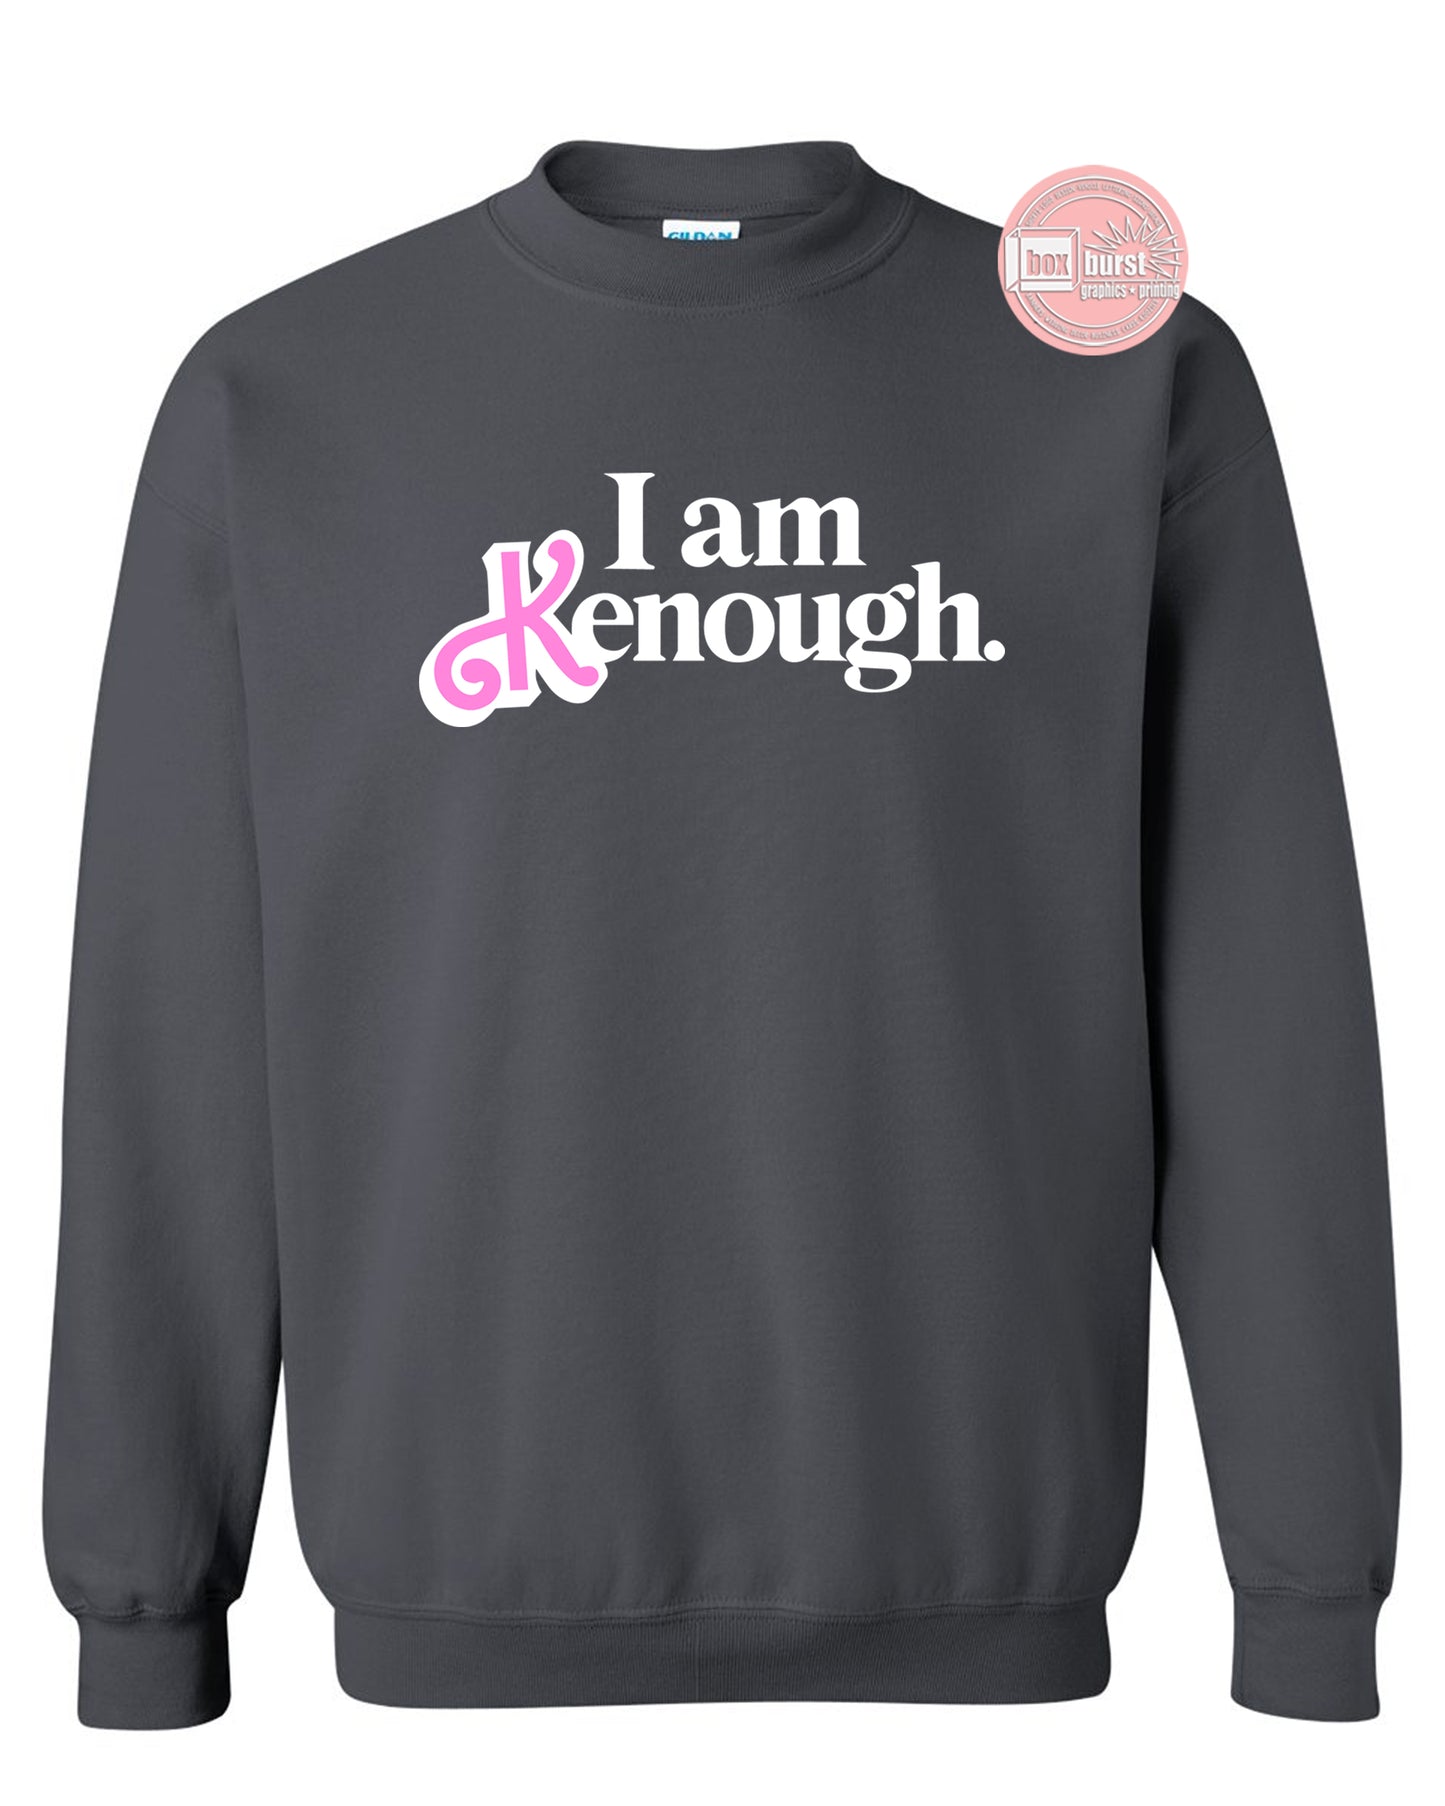 I am kenough sweatshirt cozy fleece unisex adult sweatshirt